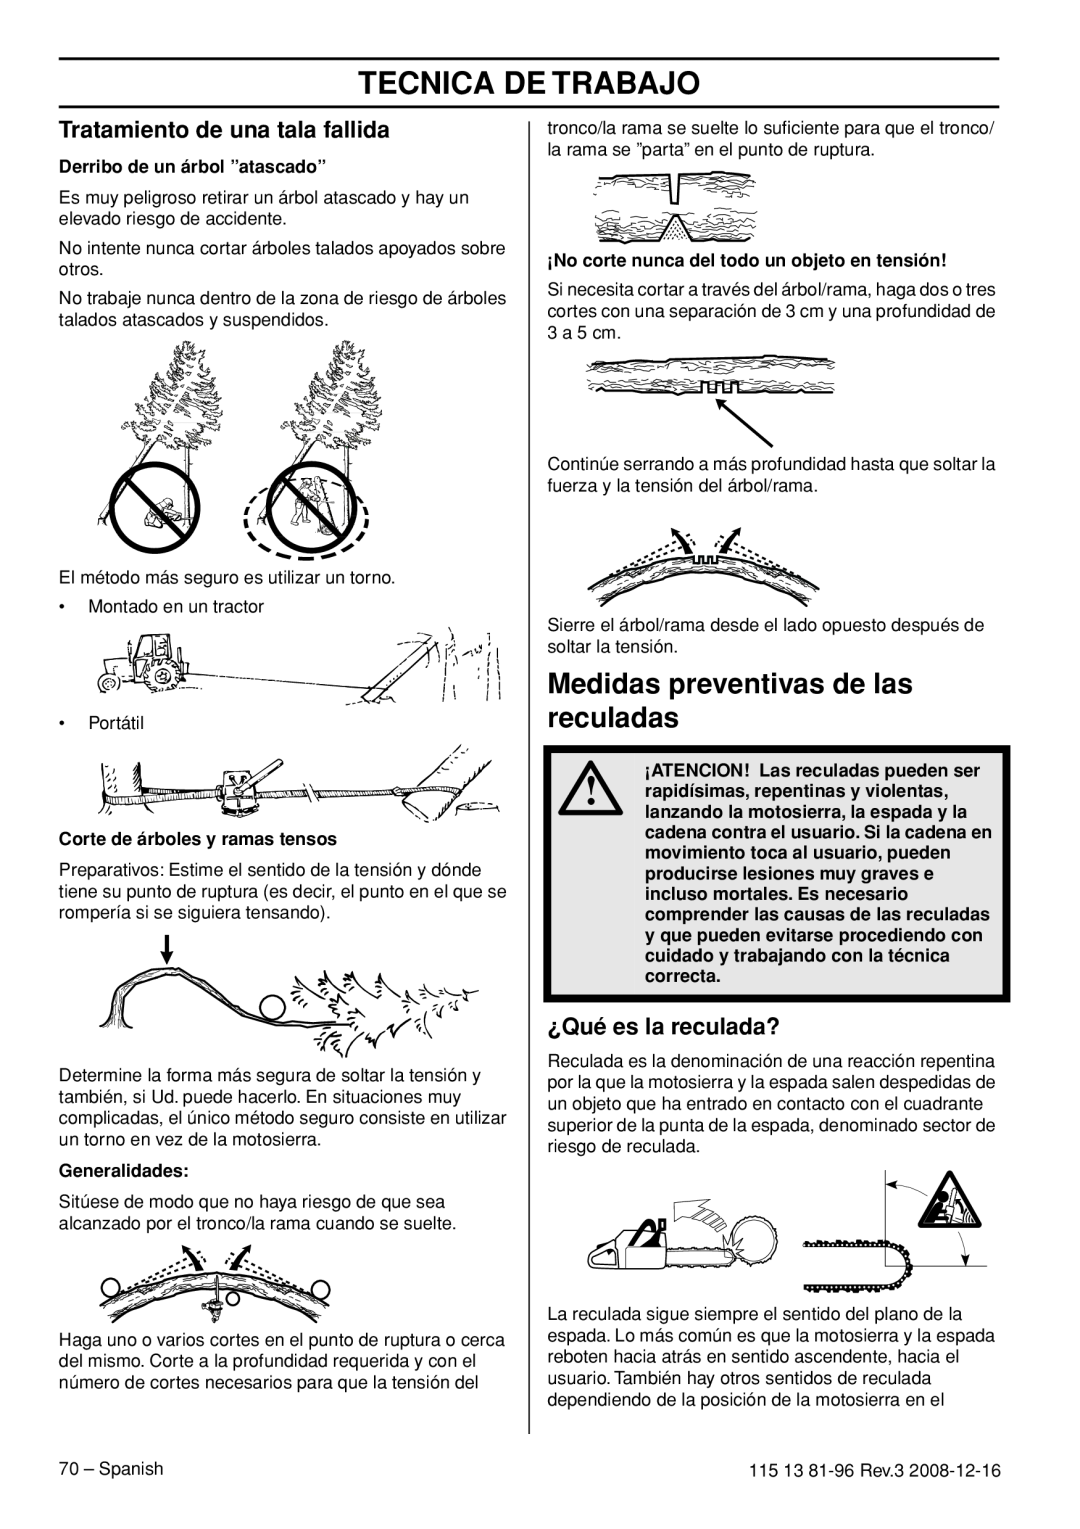 Husqvarna 450e EPA III manual Medidas preventivas de las reculadas, Tratamiento de una tala fallida, ¿Qué es la reculada? 